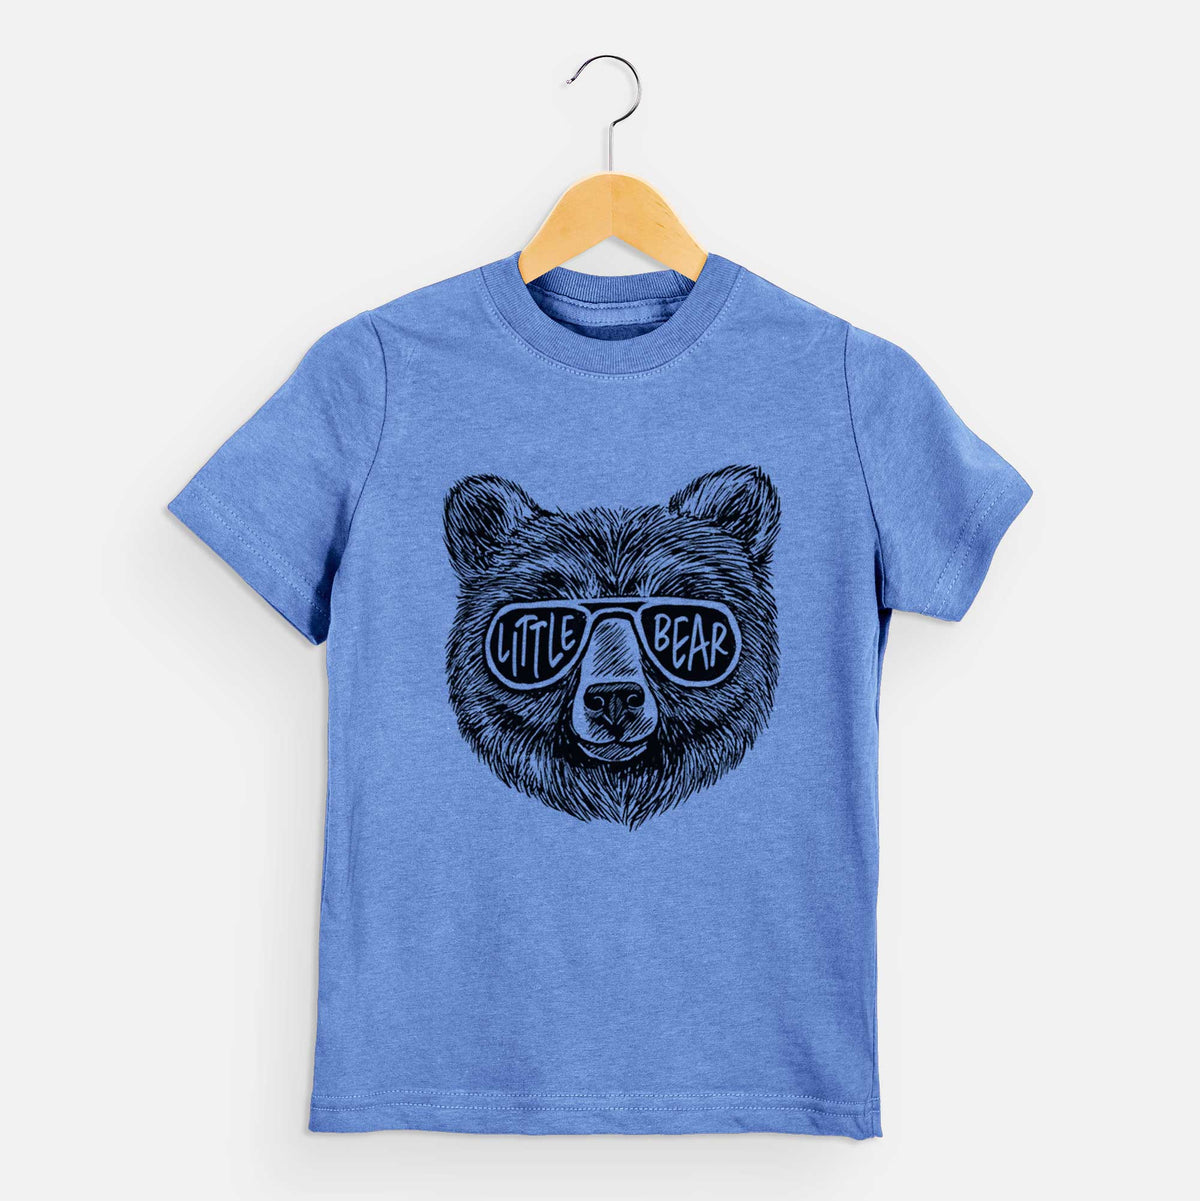 Little Bear - Kids Shirt